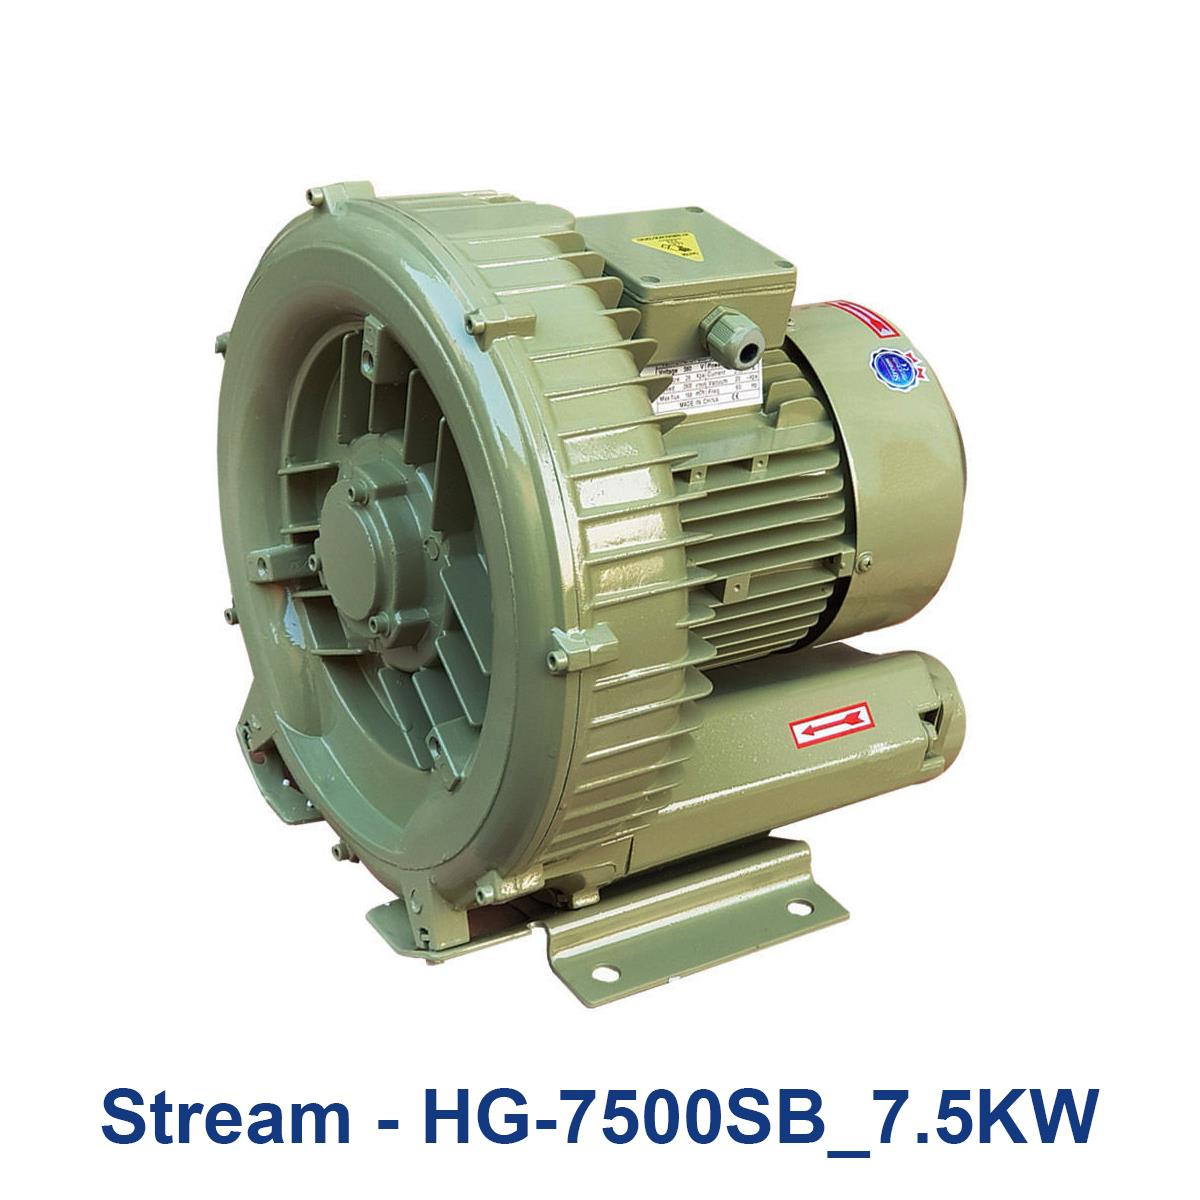 Stream---HG-7500SB_7.5KW